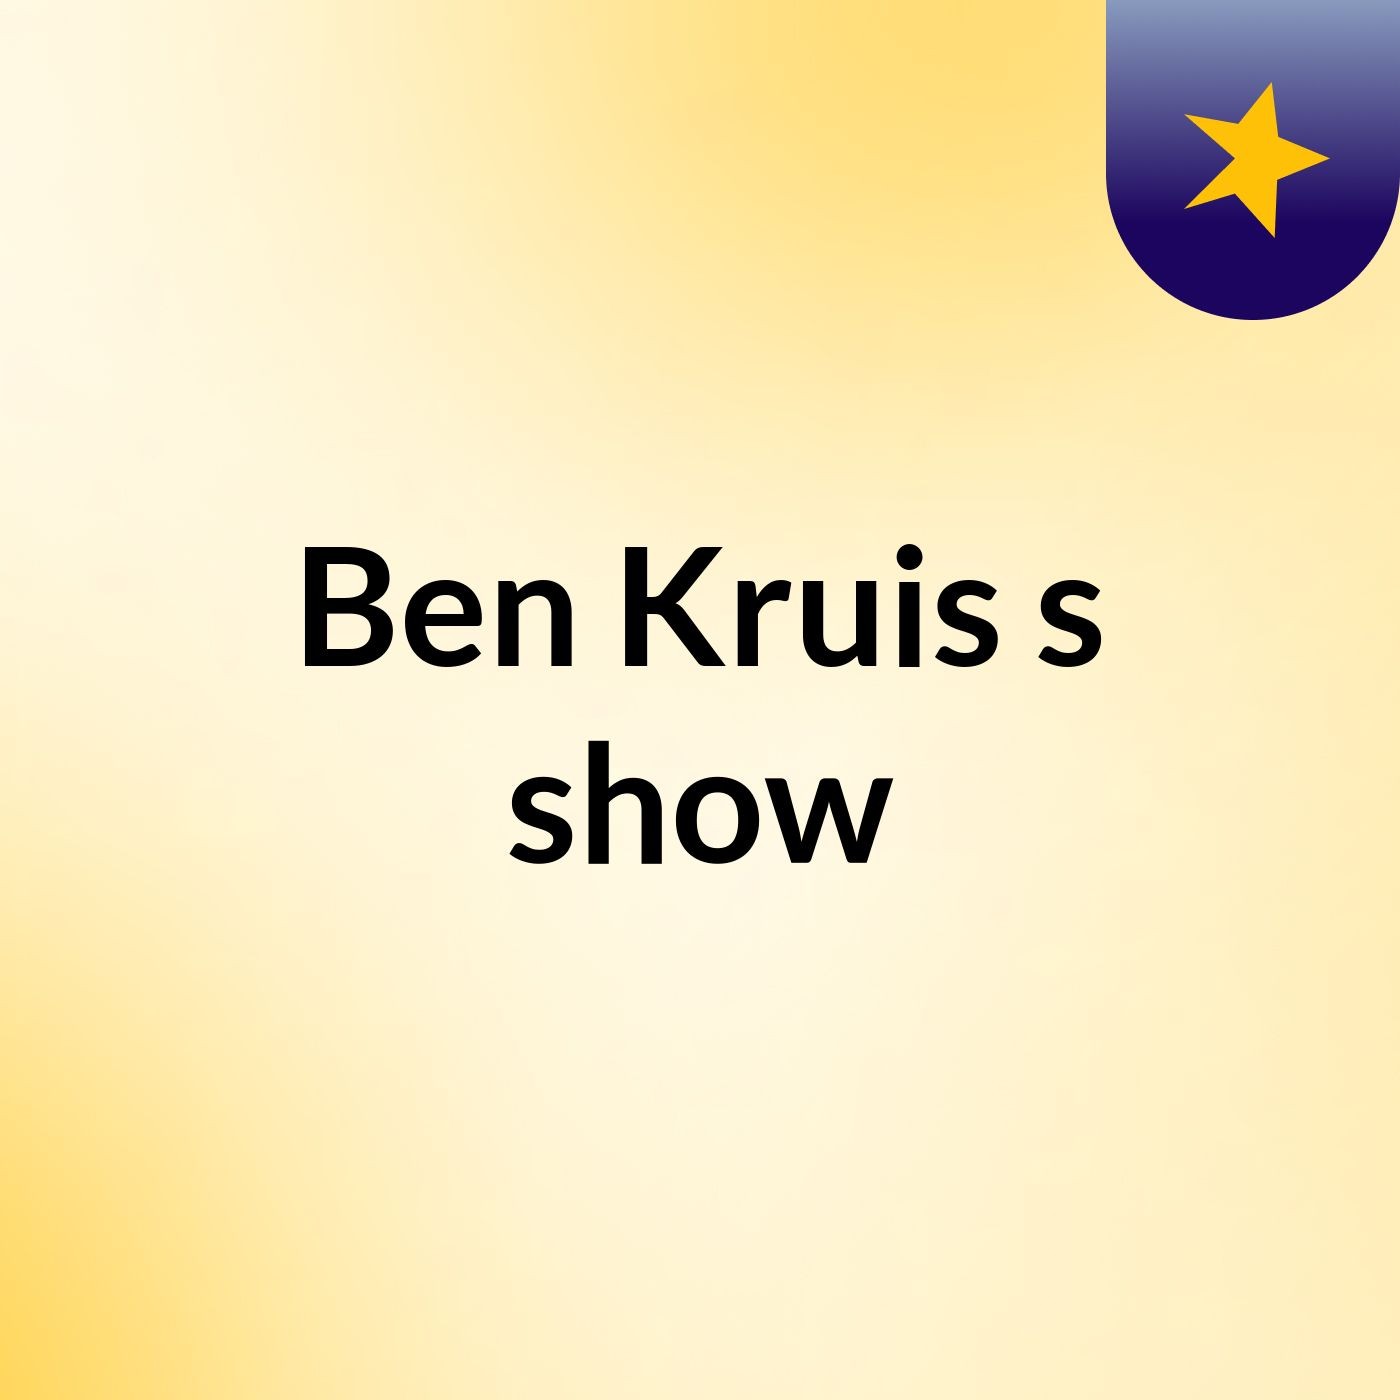 Ben Kruis's show